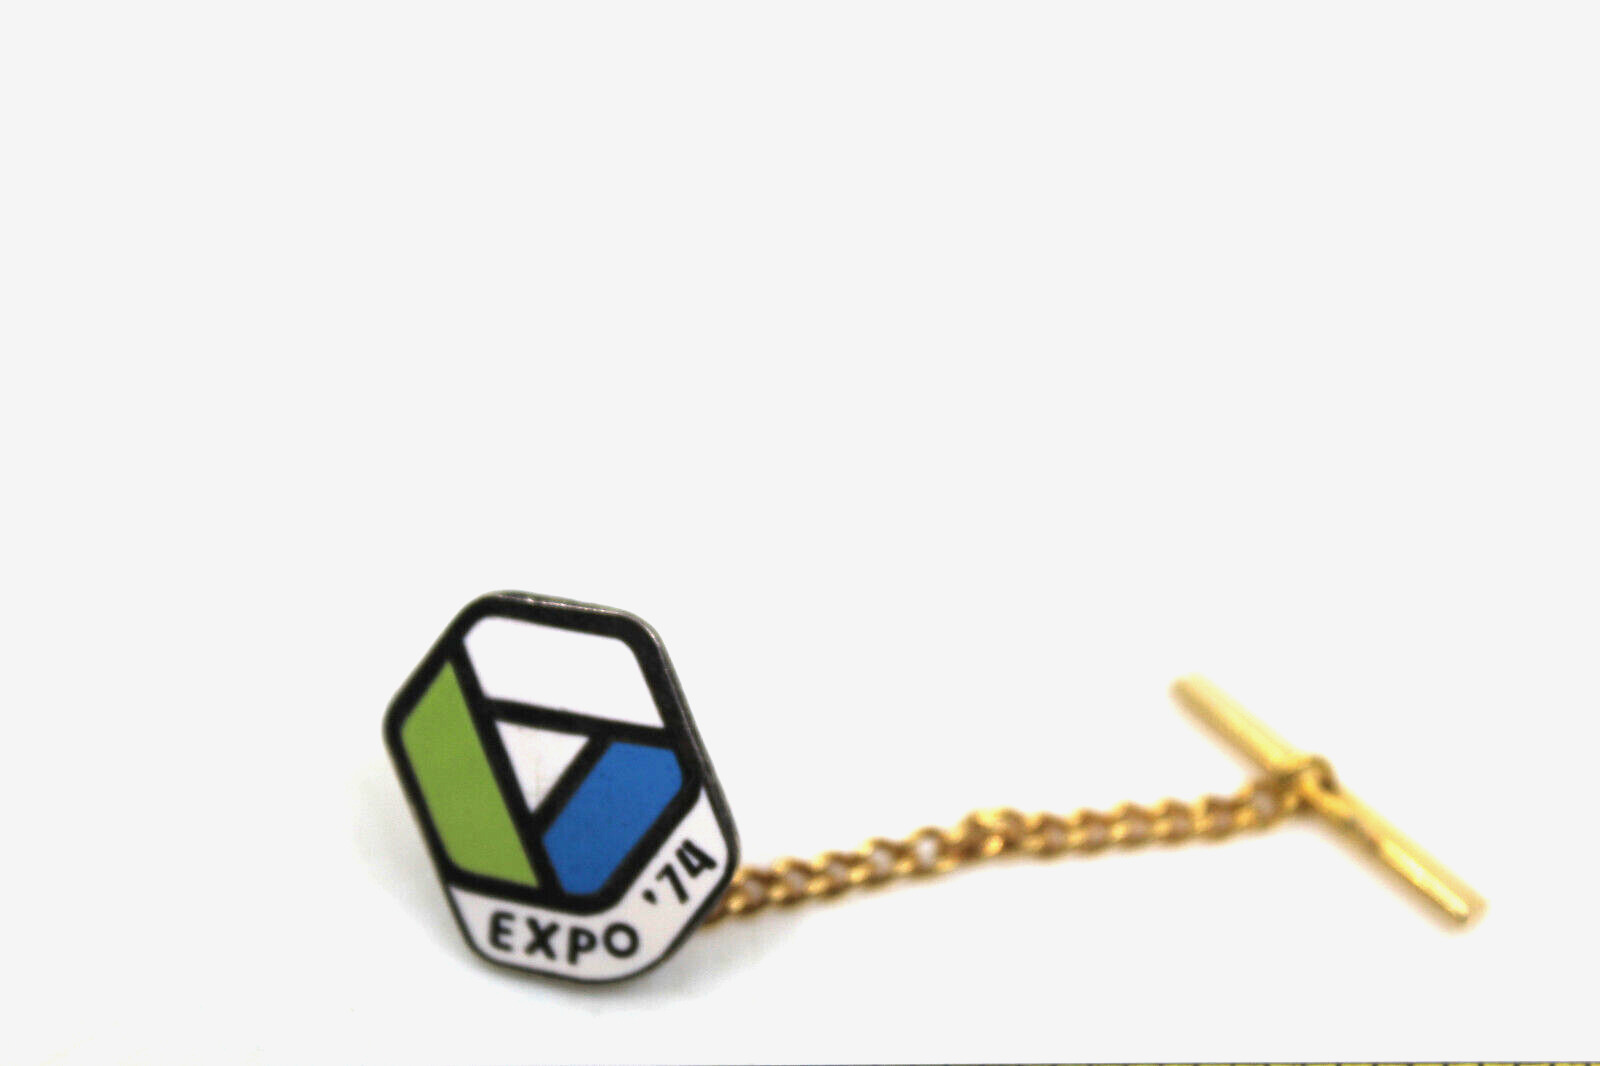 EXPO 74 The World Exposition Spokane Washington USA Logo Collectible Pin Vintage